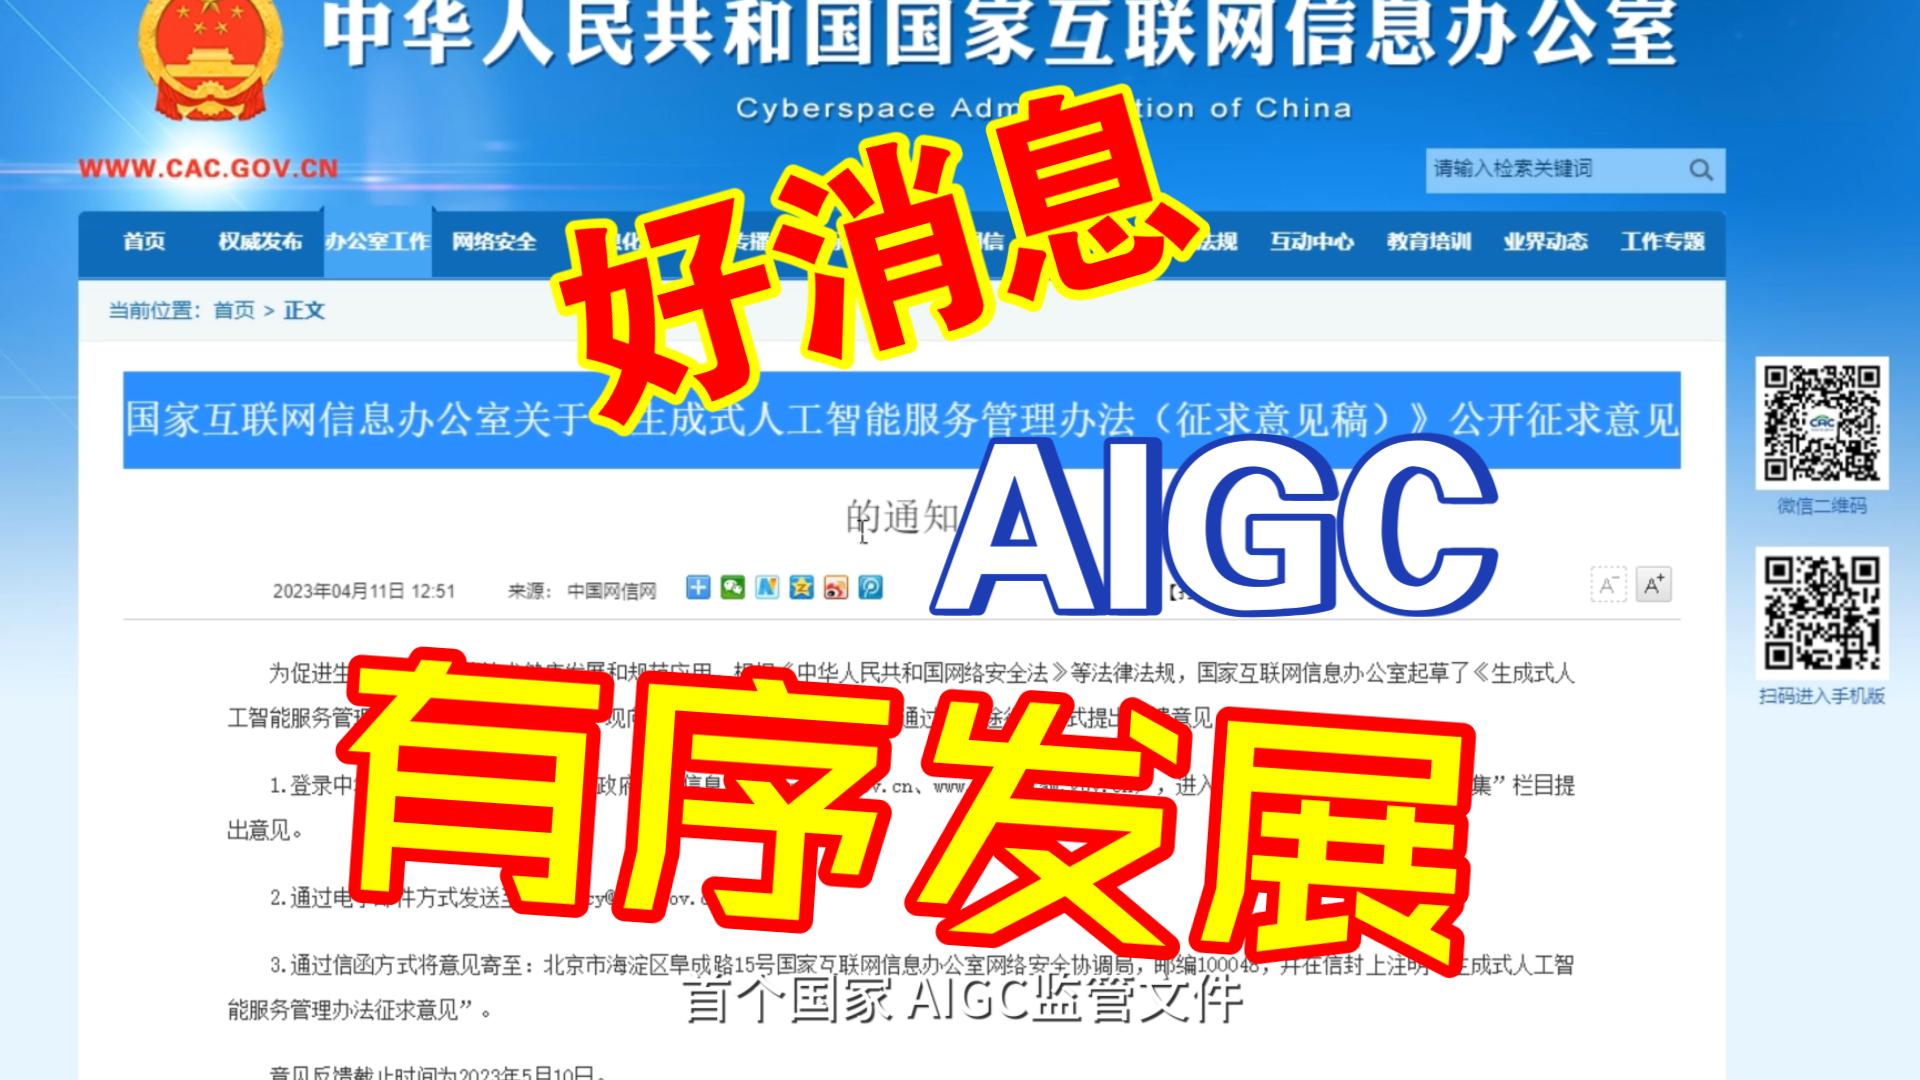 [图]首个国家AIGC监管文件，《生成式人工智能服务管理办法》公布征求意见稿！